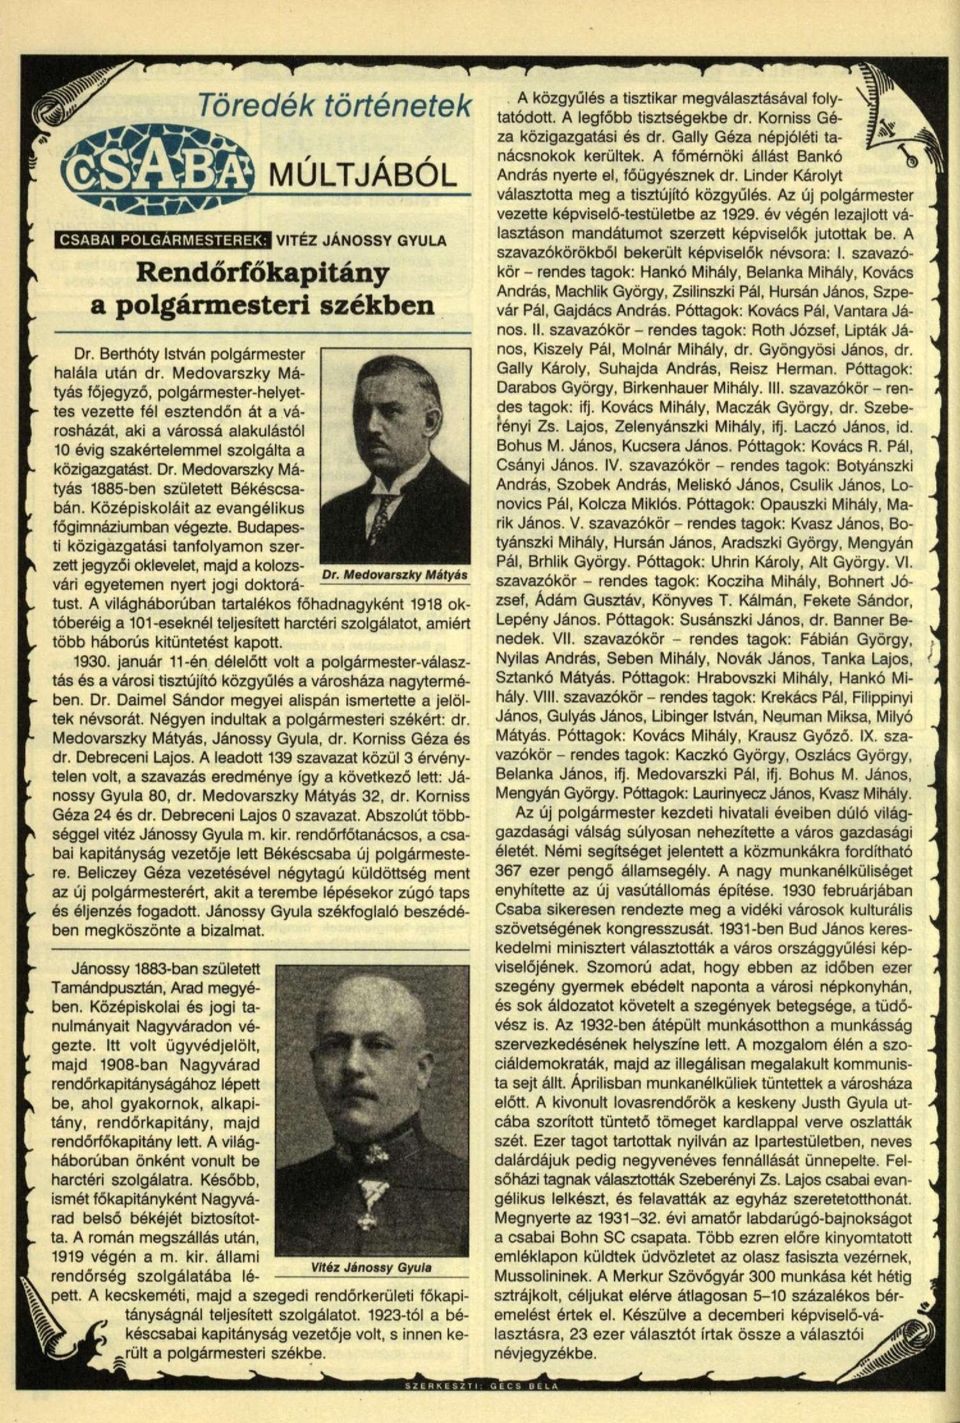 Medovarszky Mátyás 1885-ben született Békéscsabán. Középiskoláit az evangélikus főgimnáziumban végezte.